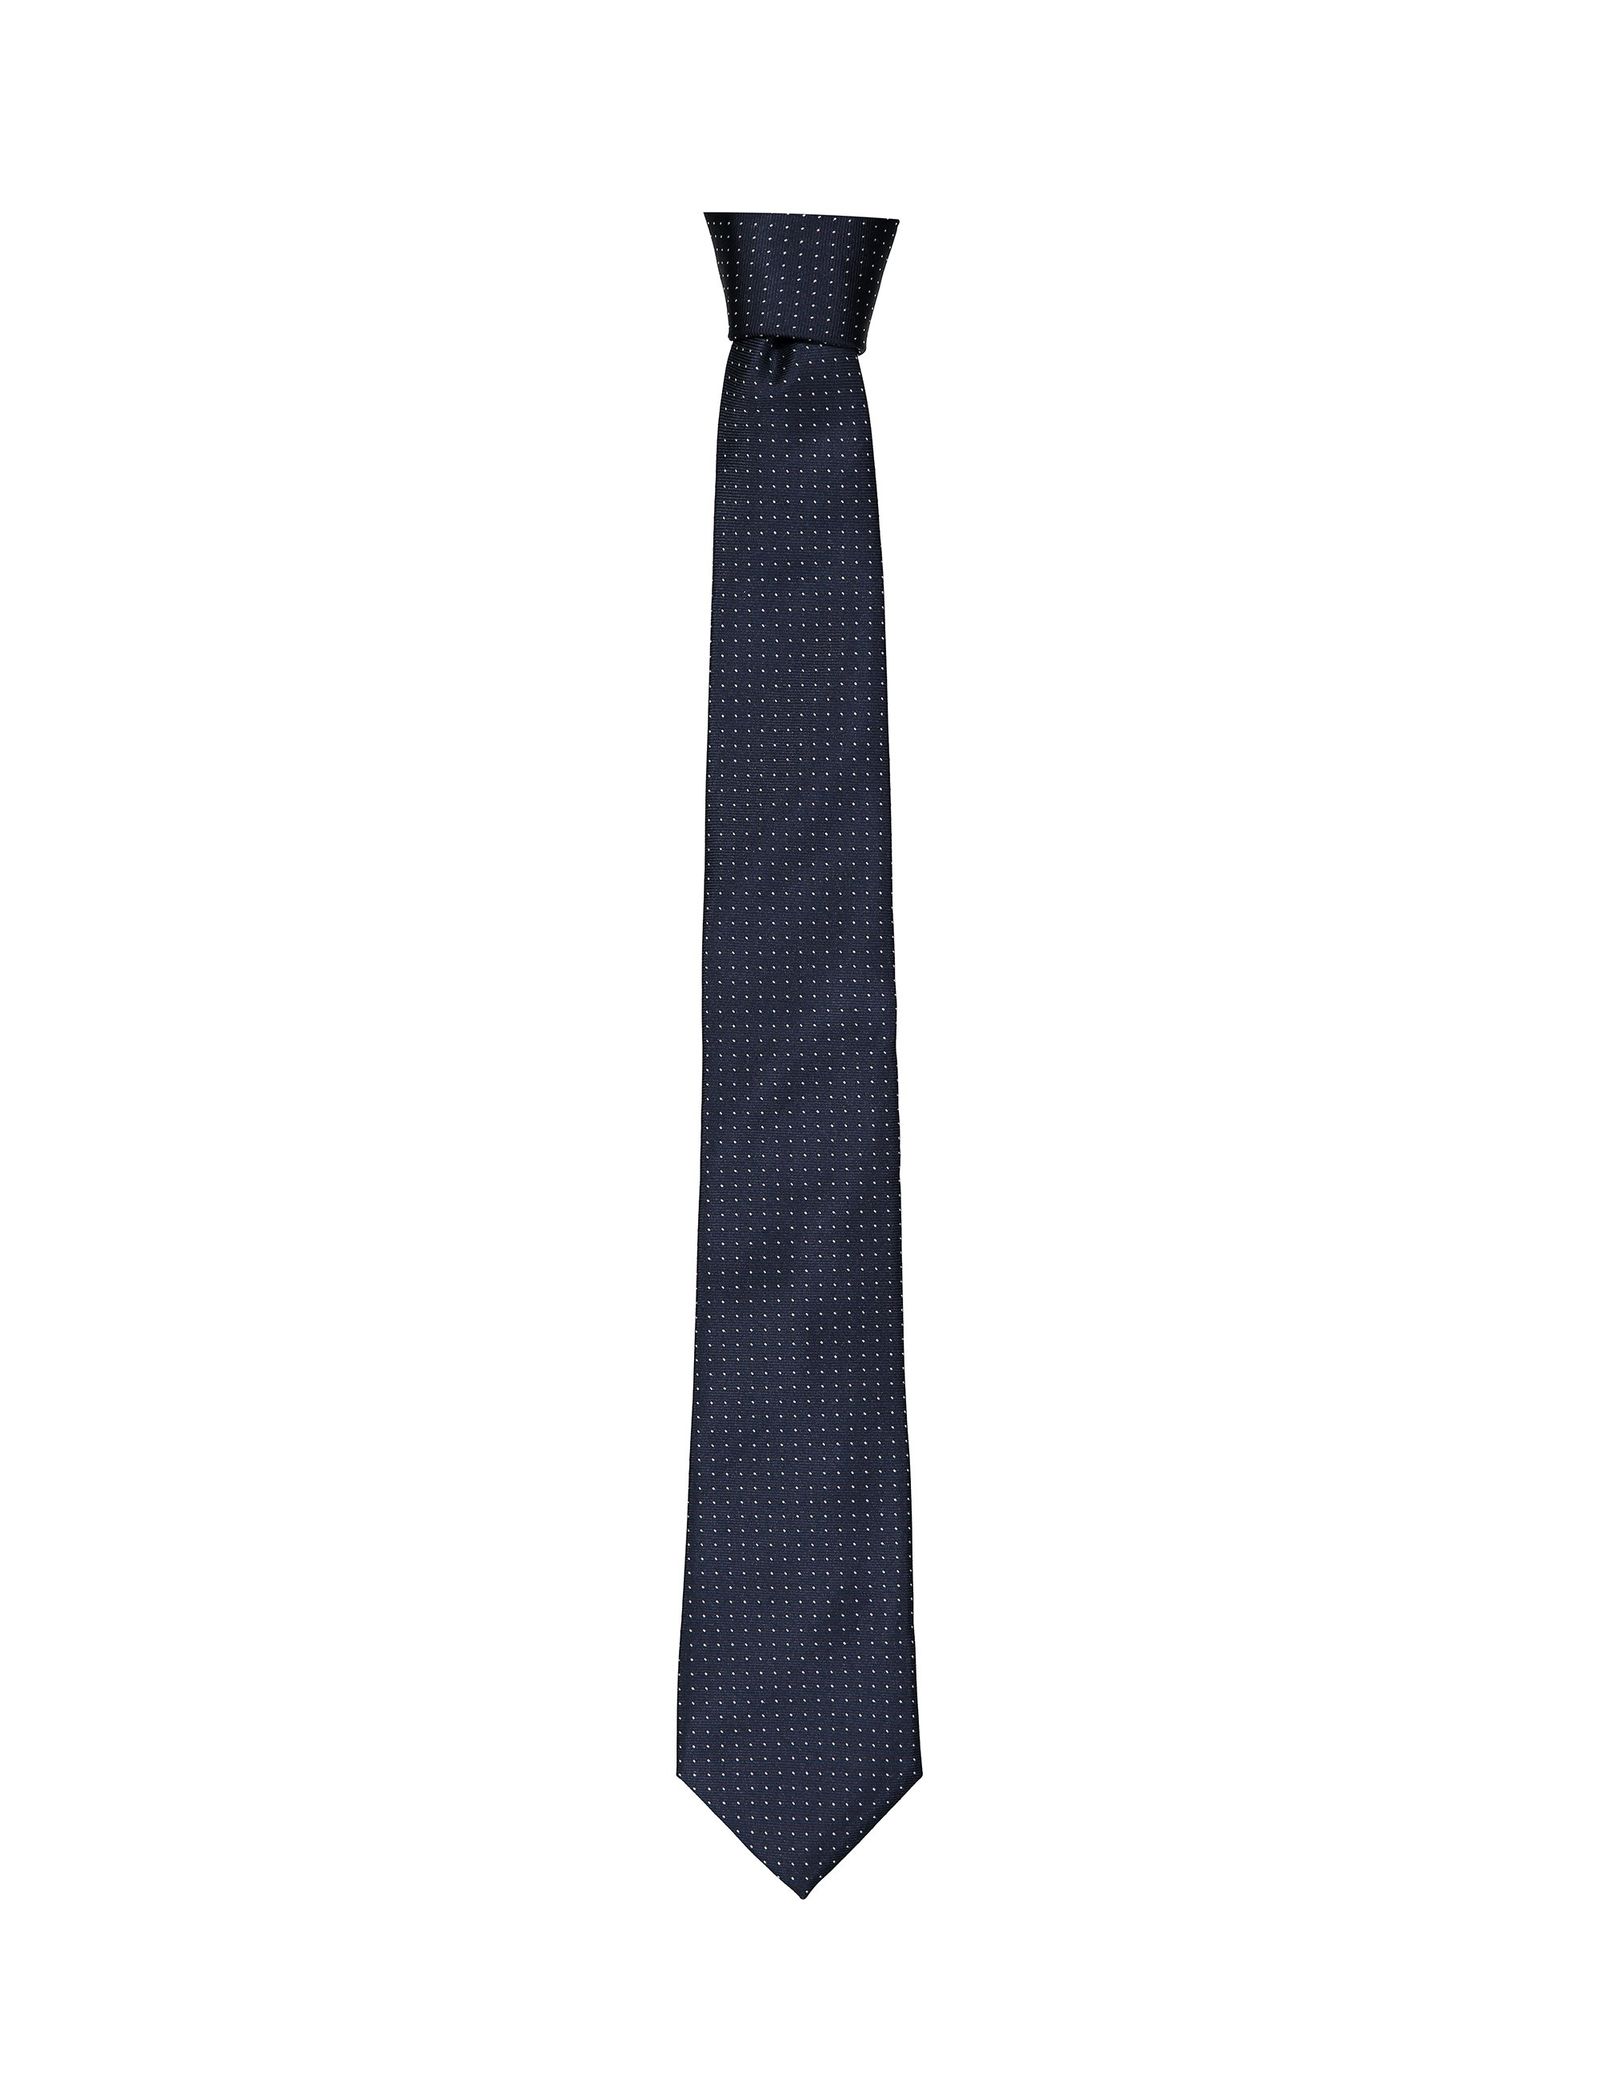 کراوات طرح دار مردانه - مانگو - سرمه اي - 1